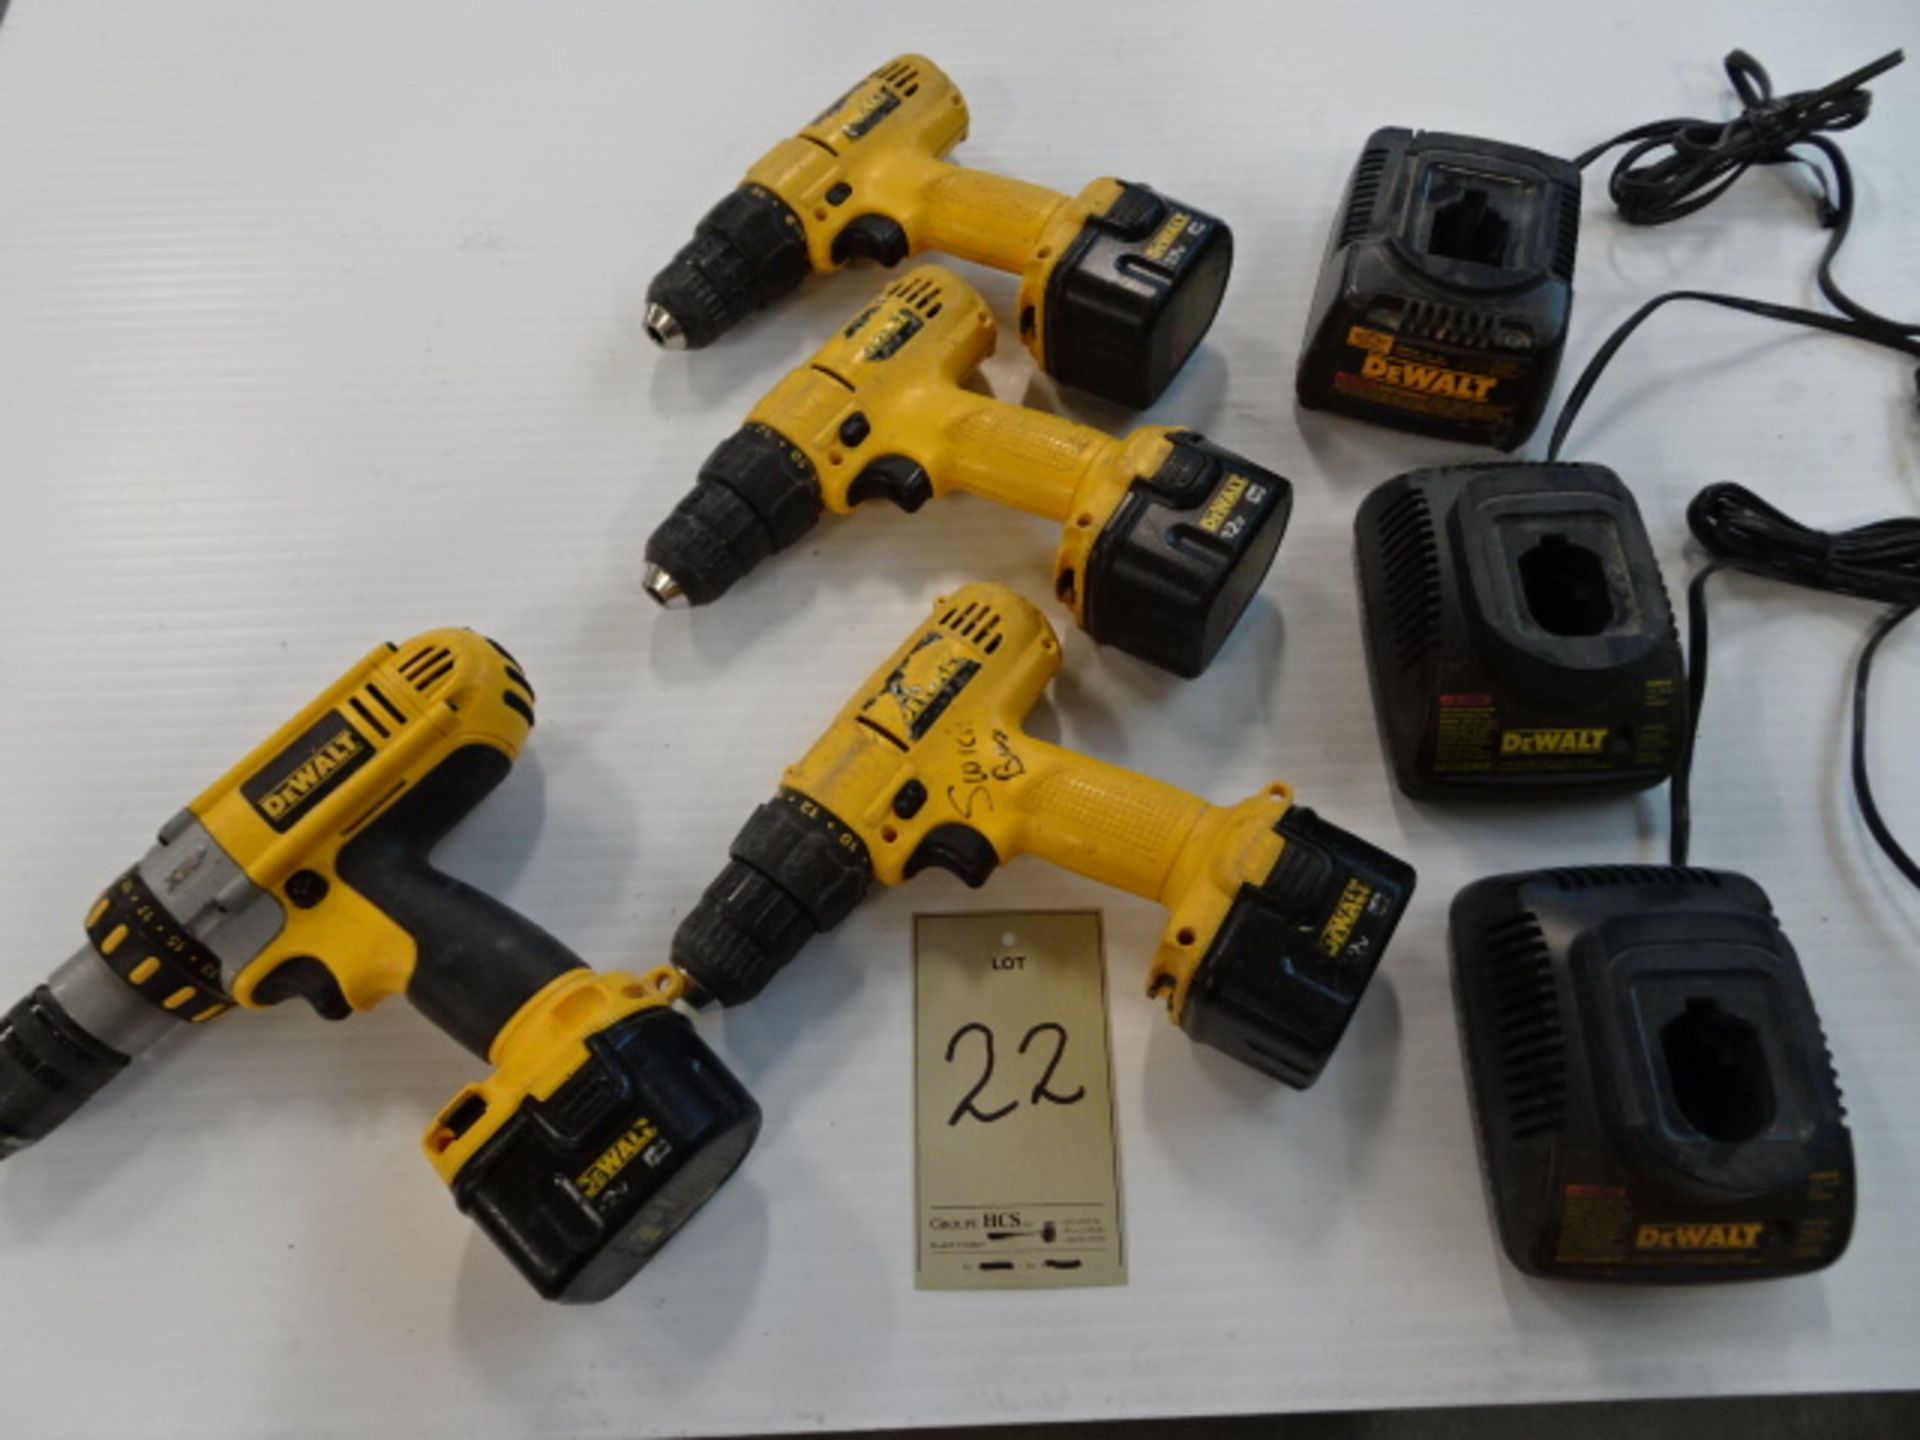 Lot de (4) perceuses à batterie 12 volts "Dewalt" (4) 12 volts Cordless drill driver